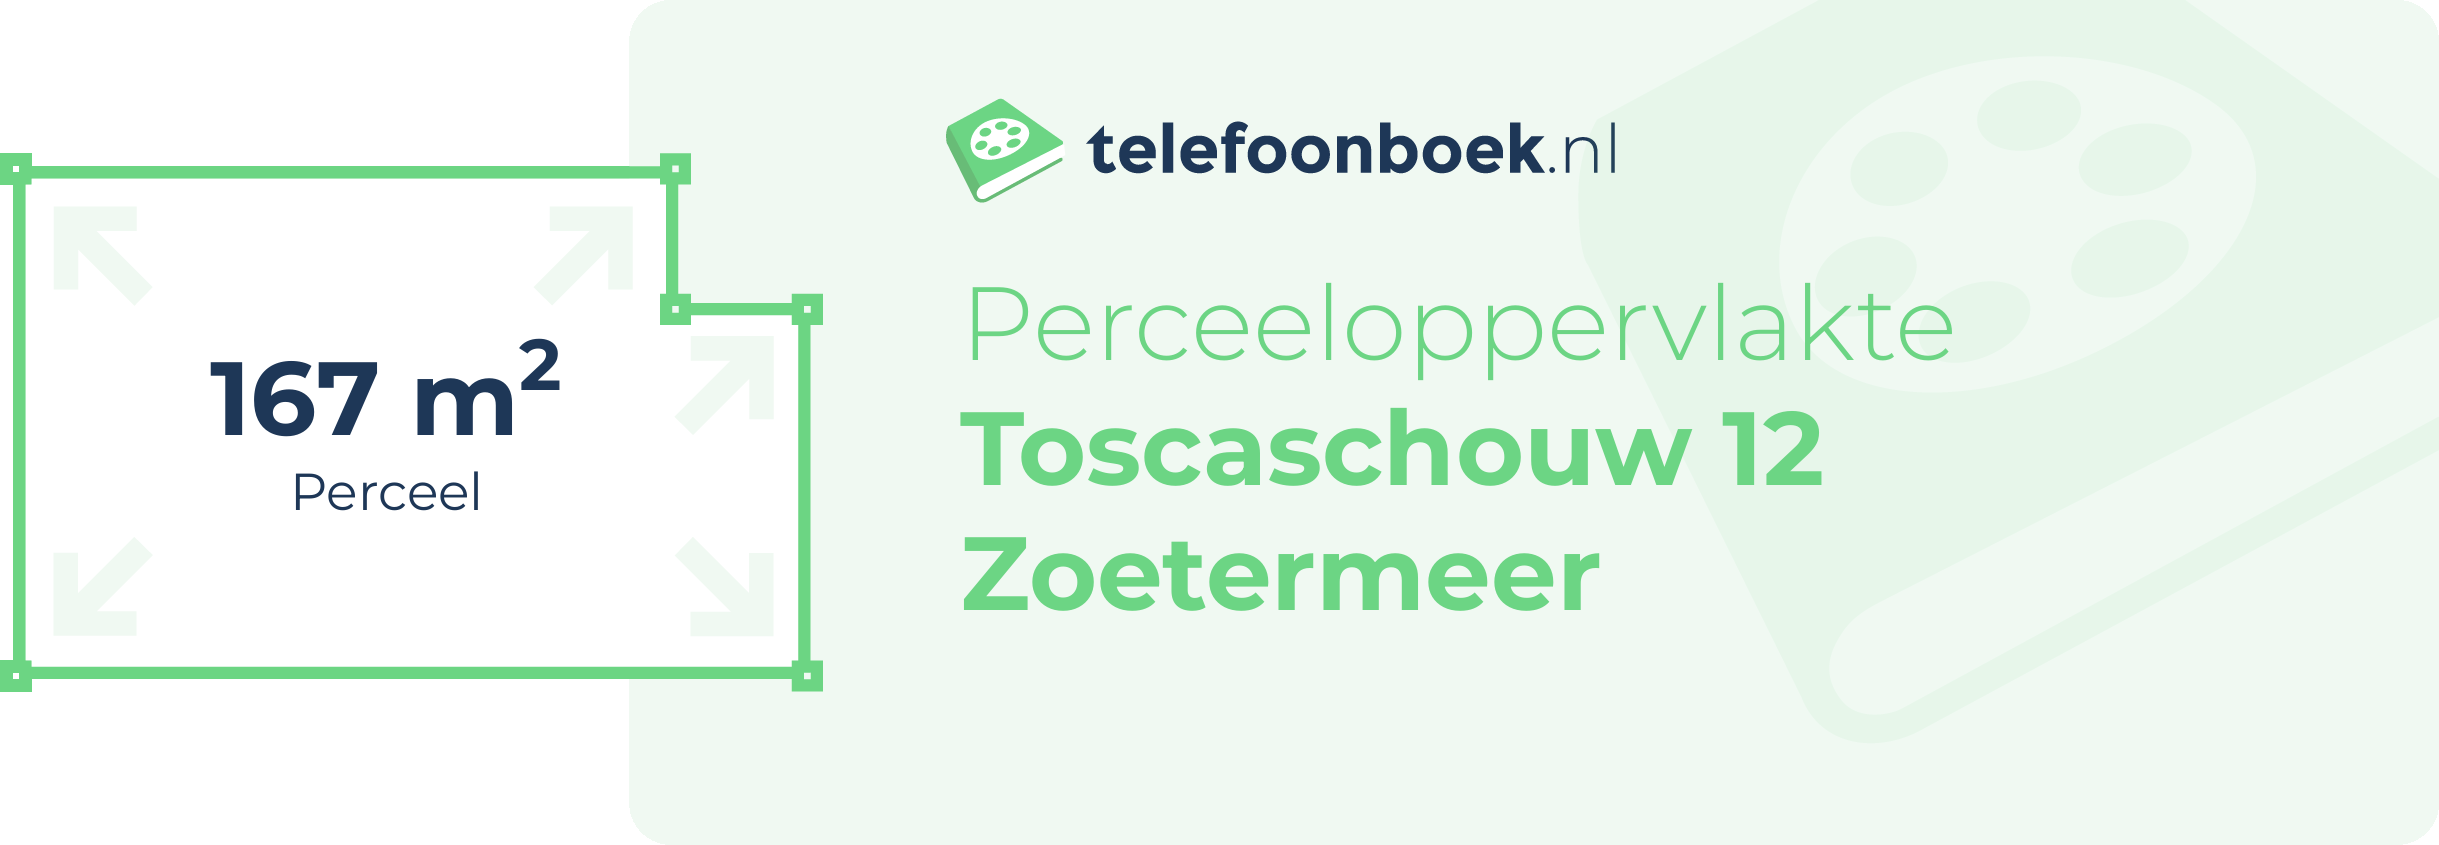 Perceeloppervlakte Toscaschouw 12 Zoetermeer